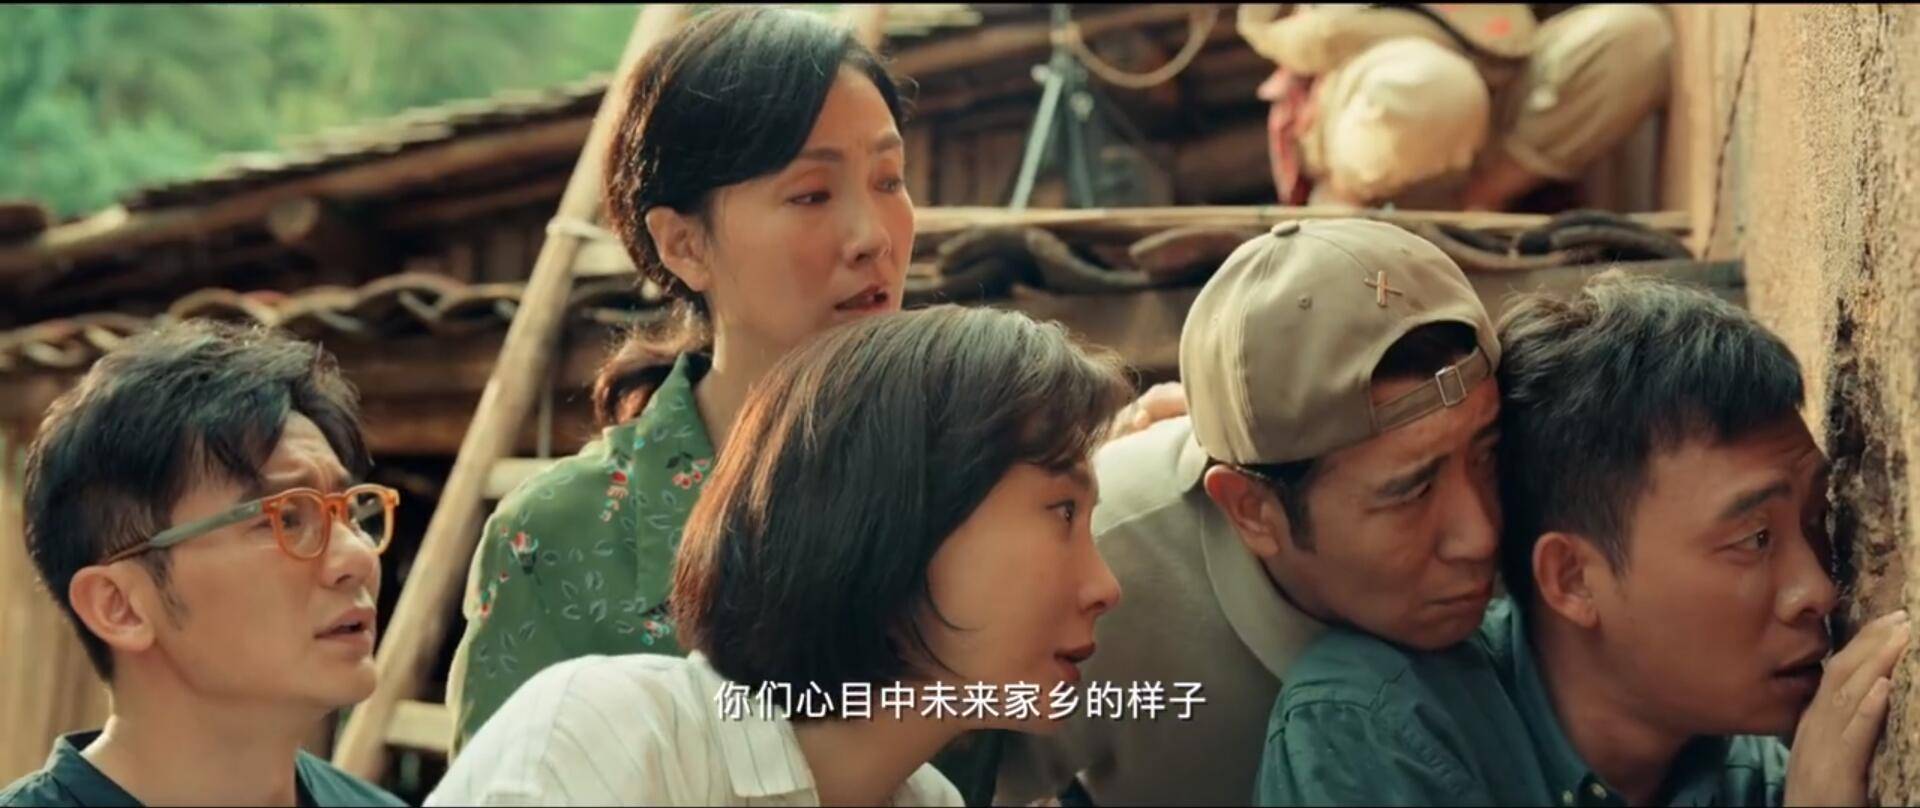 《我和我的家乡》国庆上映,葛优范伟飙演技 王源土到认不出!